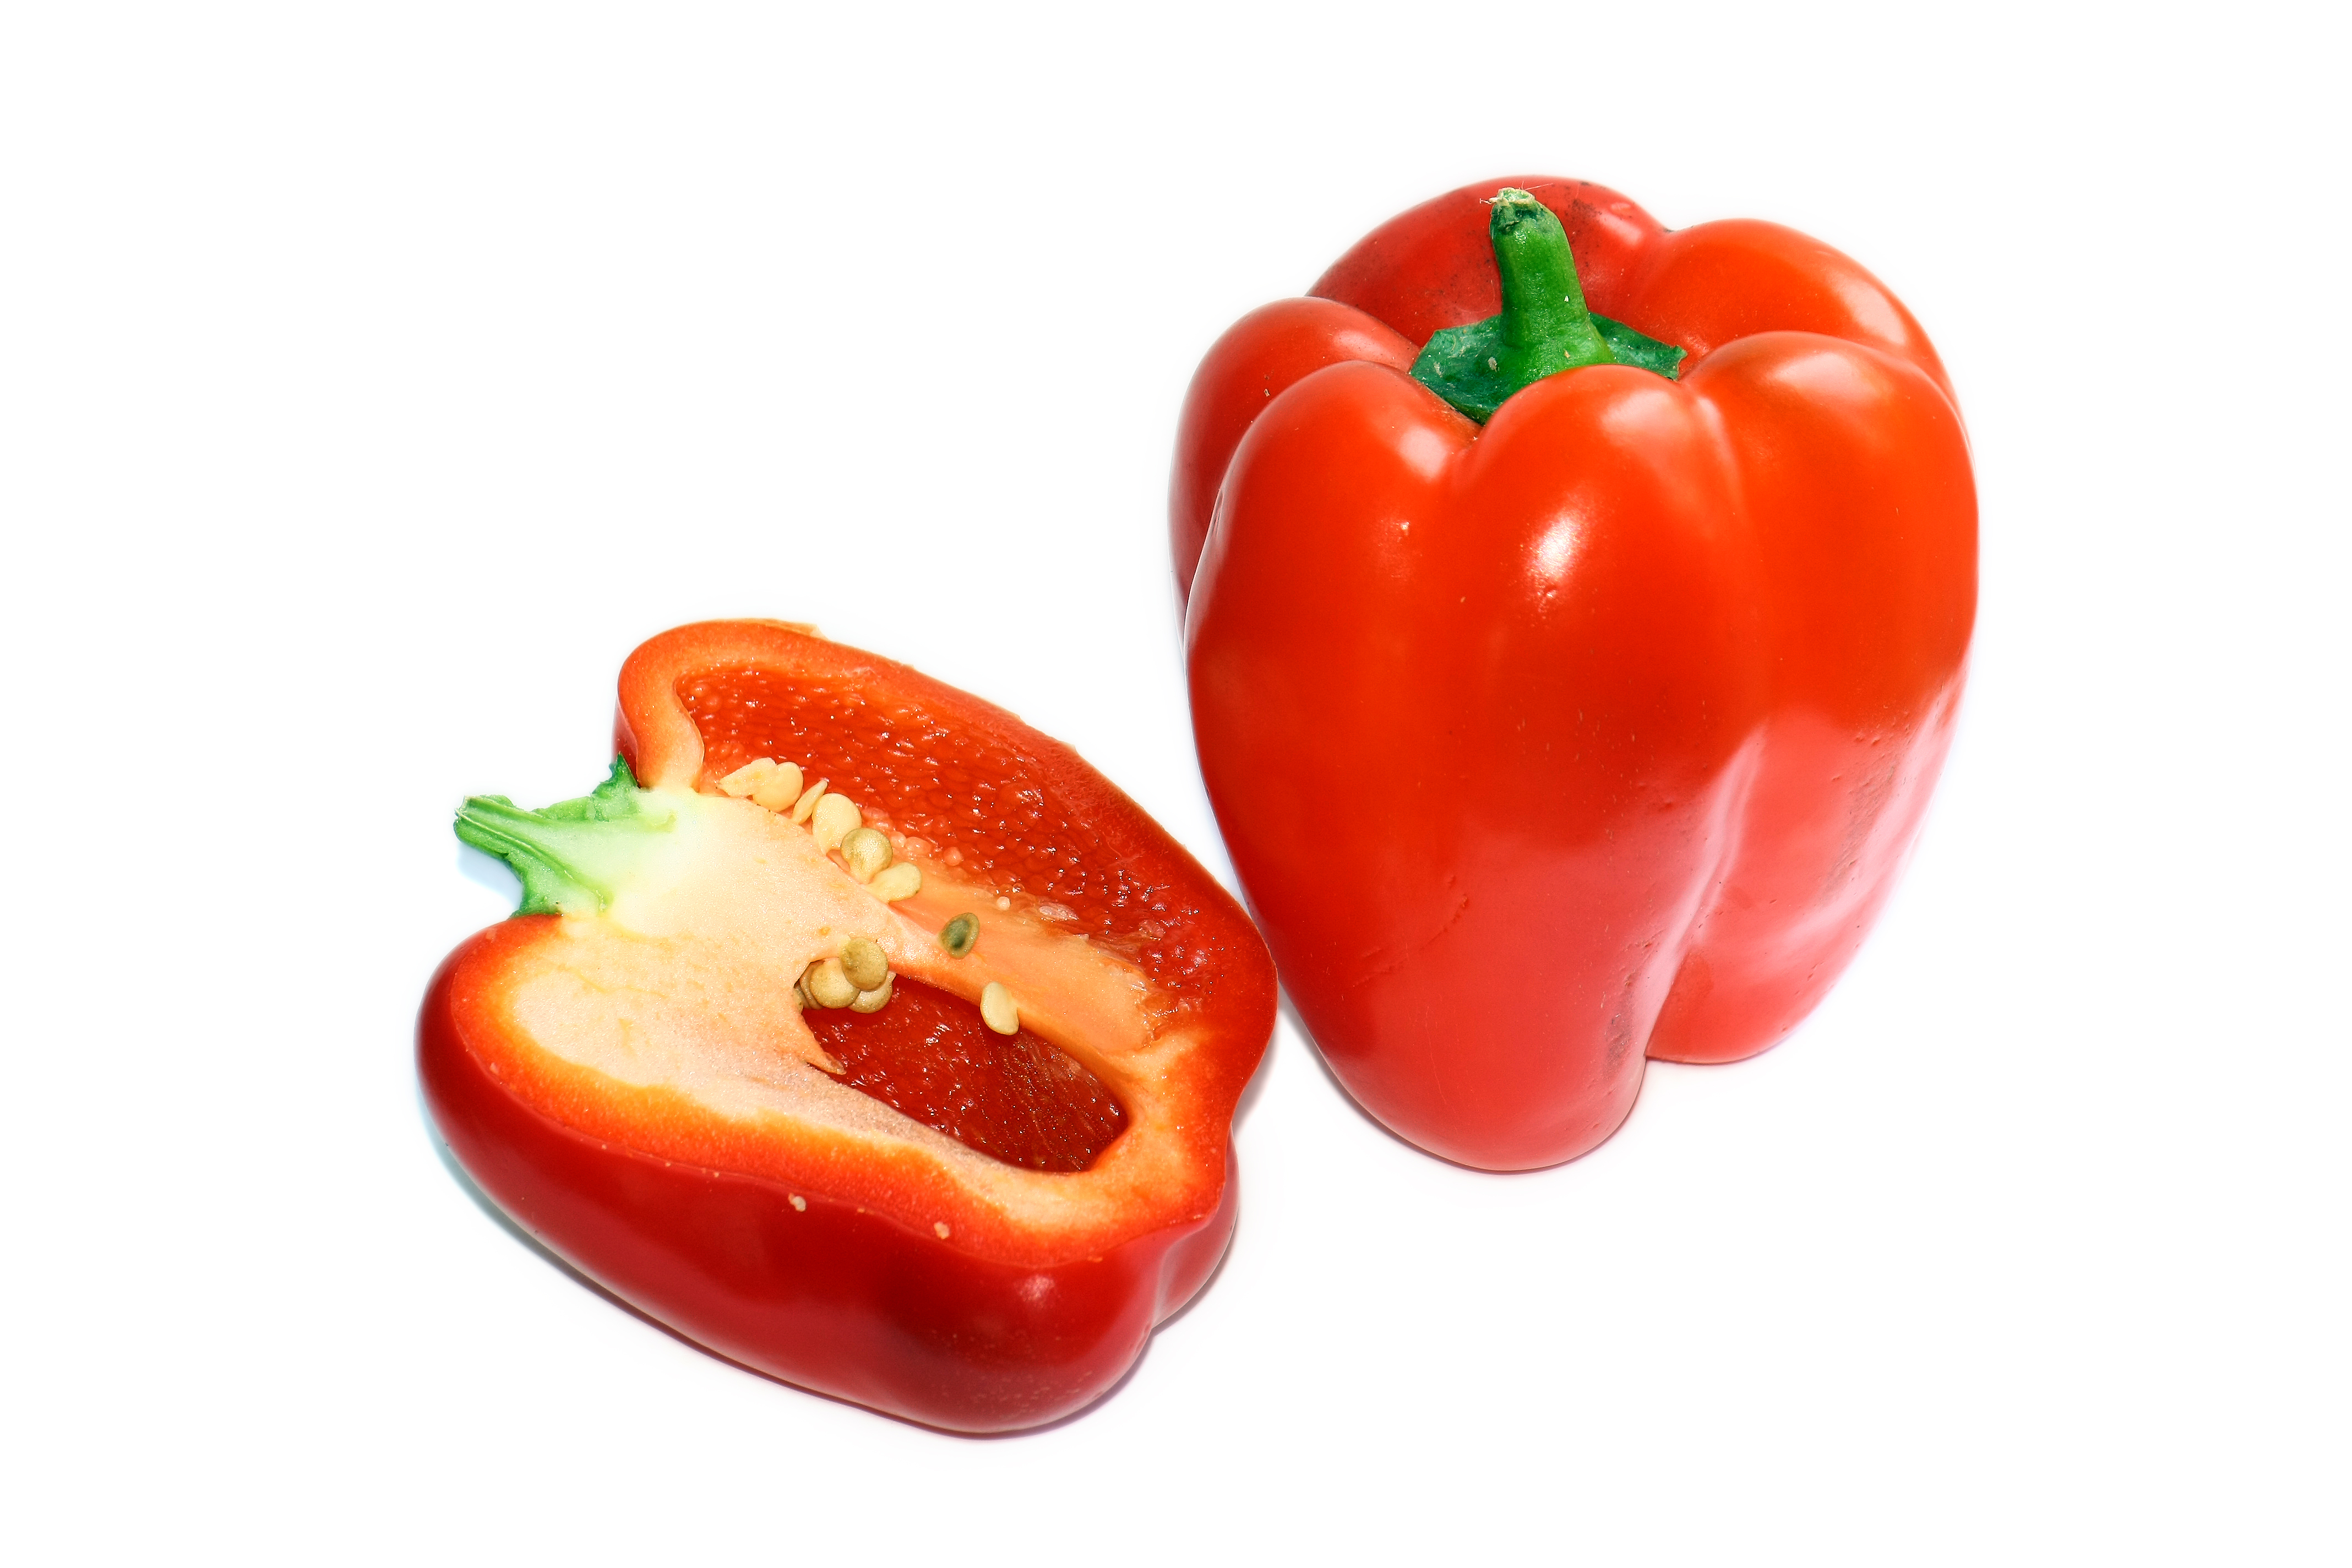 File:Red bell pepper.jpg - Wikimedia Commons